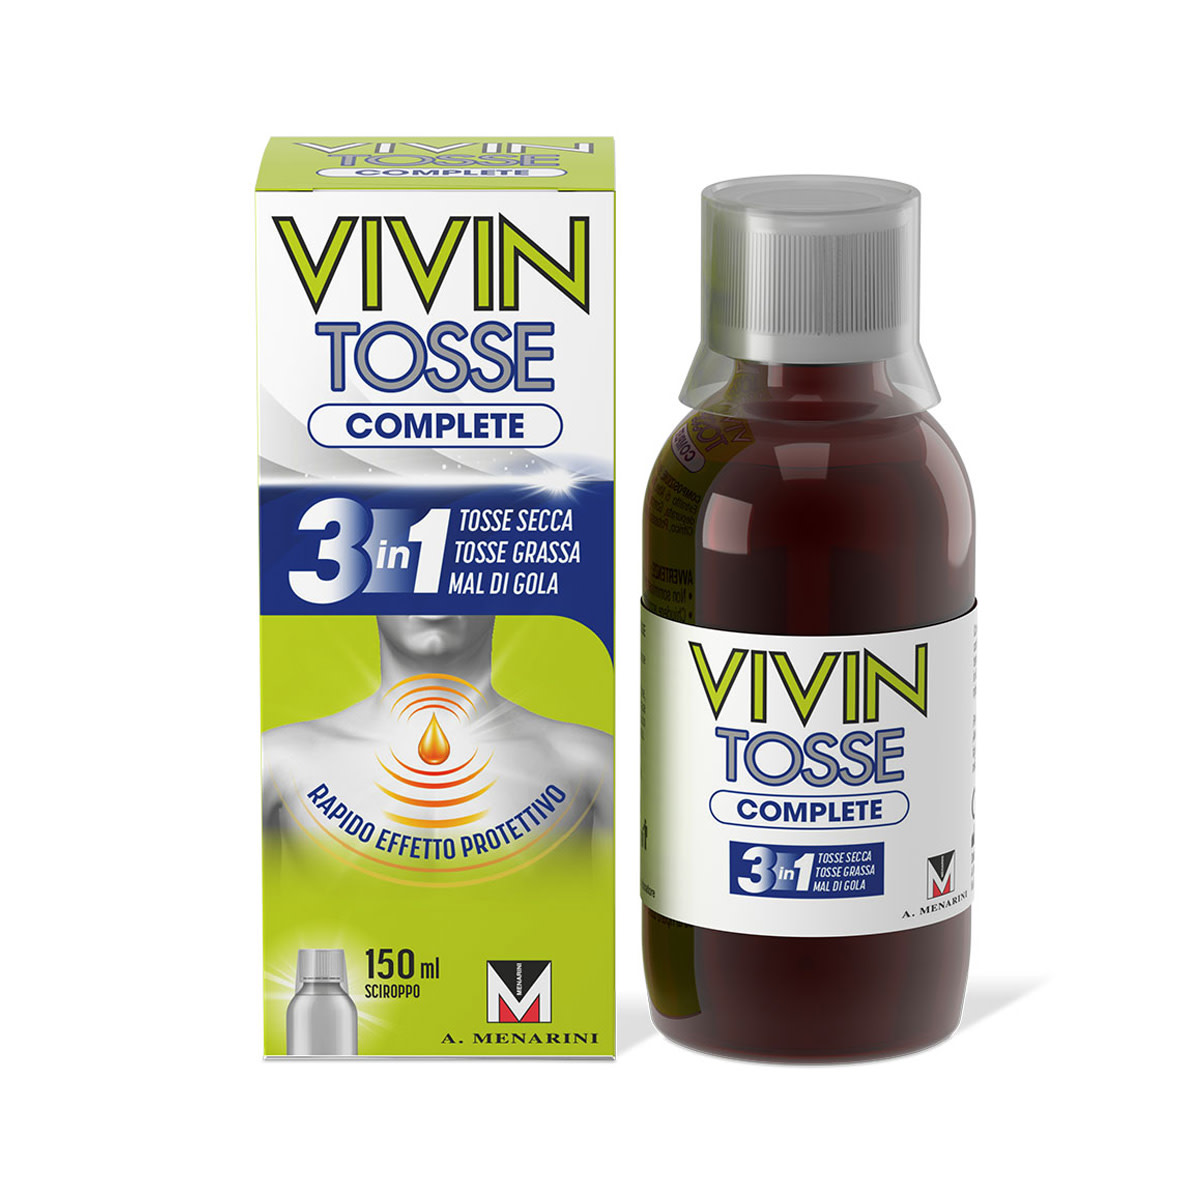 983784113 - VIVIN TOSSE COMPLETE SCIROPPO PER TOSSE 150 ML - 4709975_1.jpg